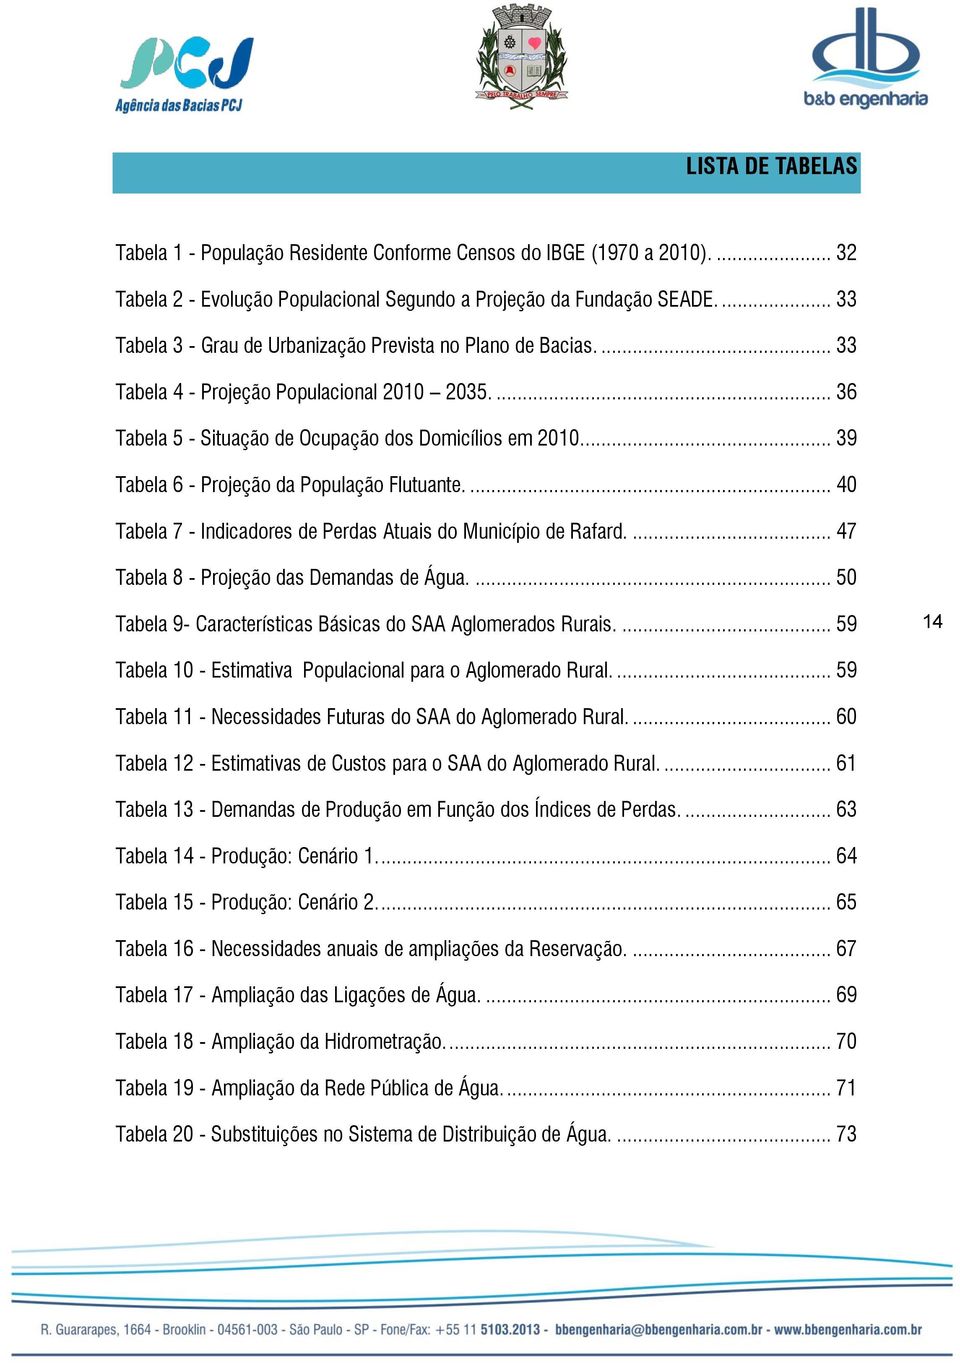 .. 39 Tabela 6 - Projeção da População Flutuante.... 40 Tabela 7 - Indicadores de Perdas Atuais do Município de Rafard.... 47 Tabela 8 - Projeção das Demandas de Água.